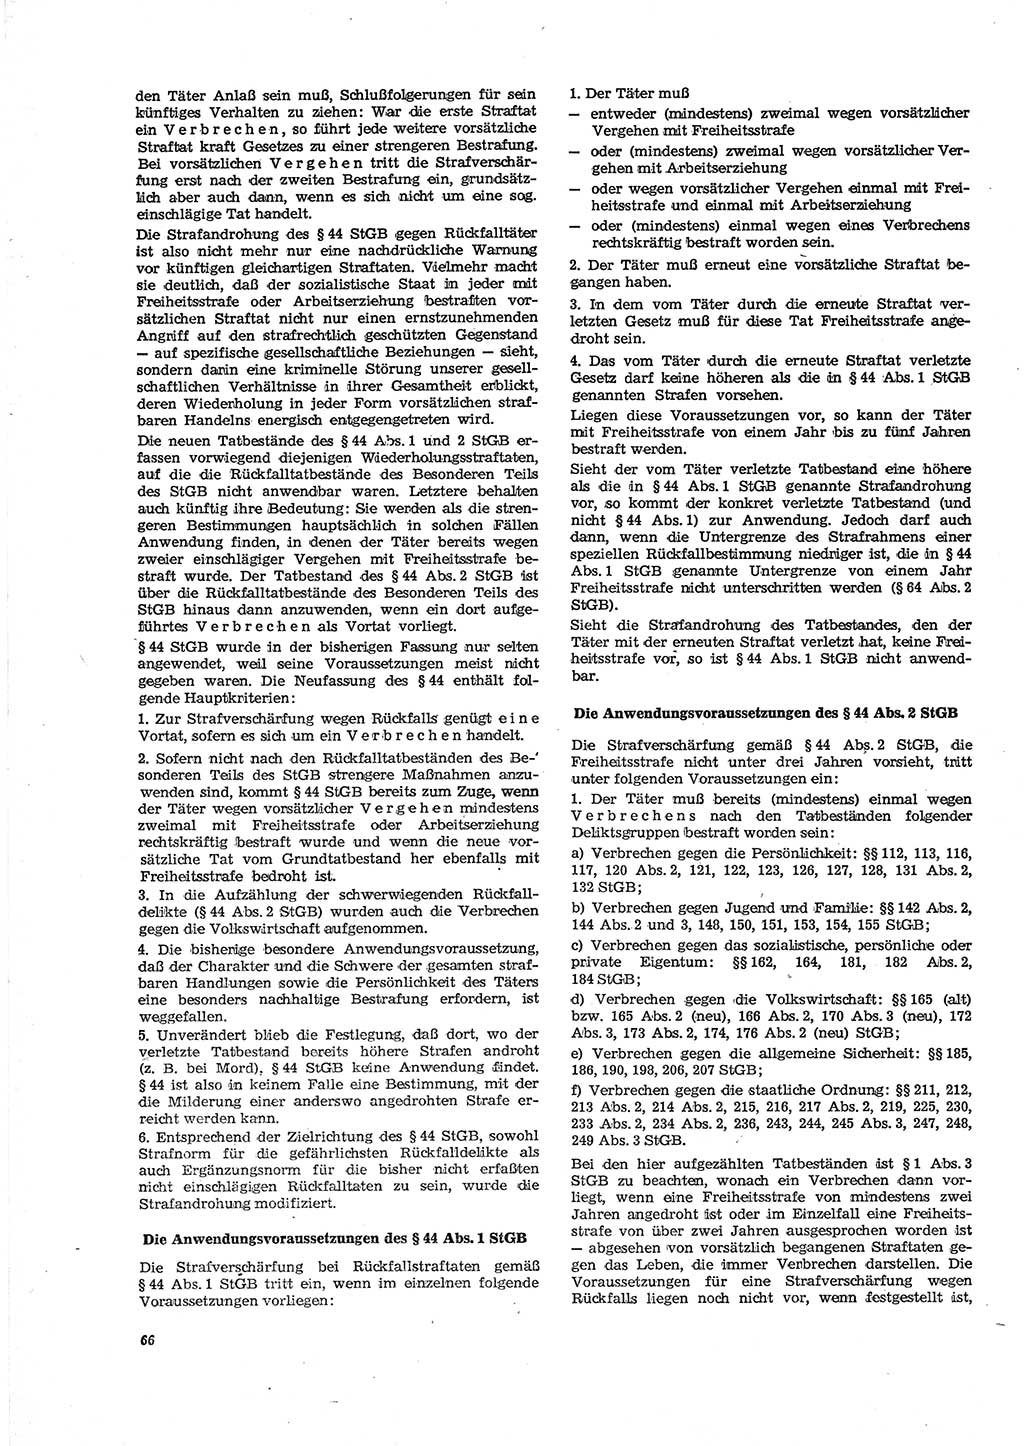 Neue Justiz (NJ), Zeitschrift für Recht und Rechtswissenschaft [Deutsche Demokratische Republik (DDR)], 29. Jahrgang 1975, Seite 66 (NJ DDR 1975, S. 66)